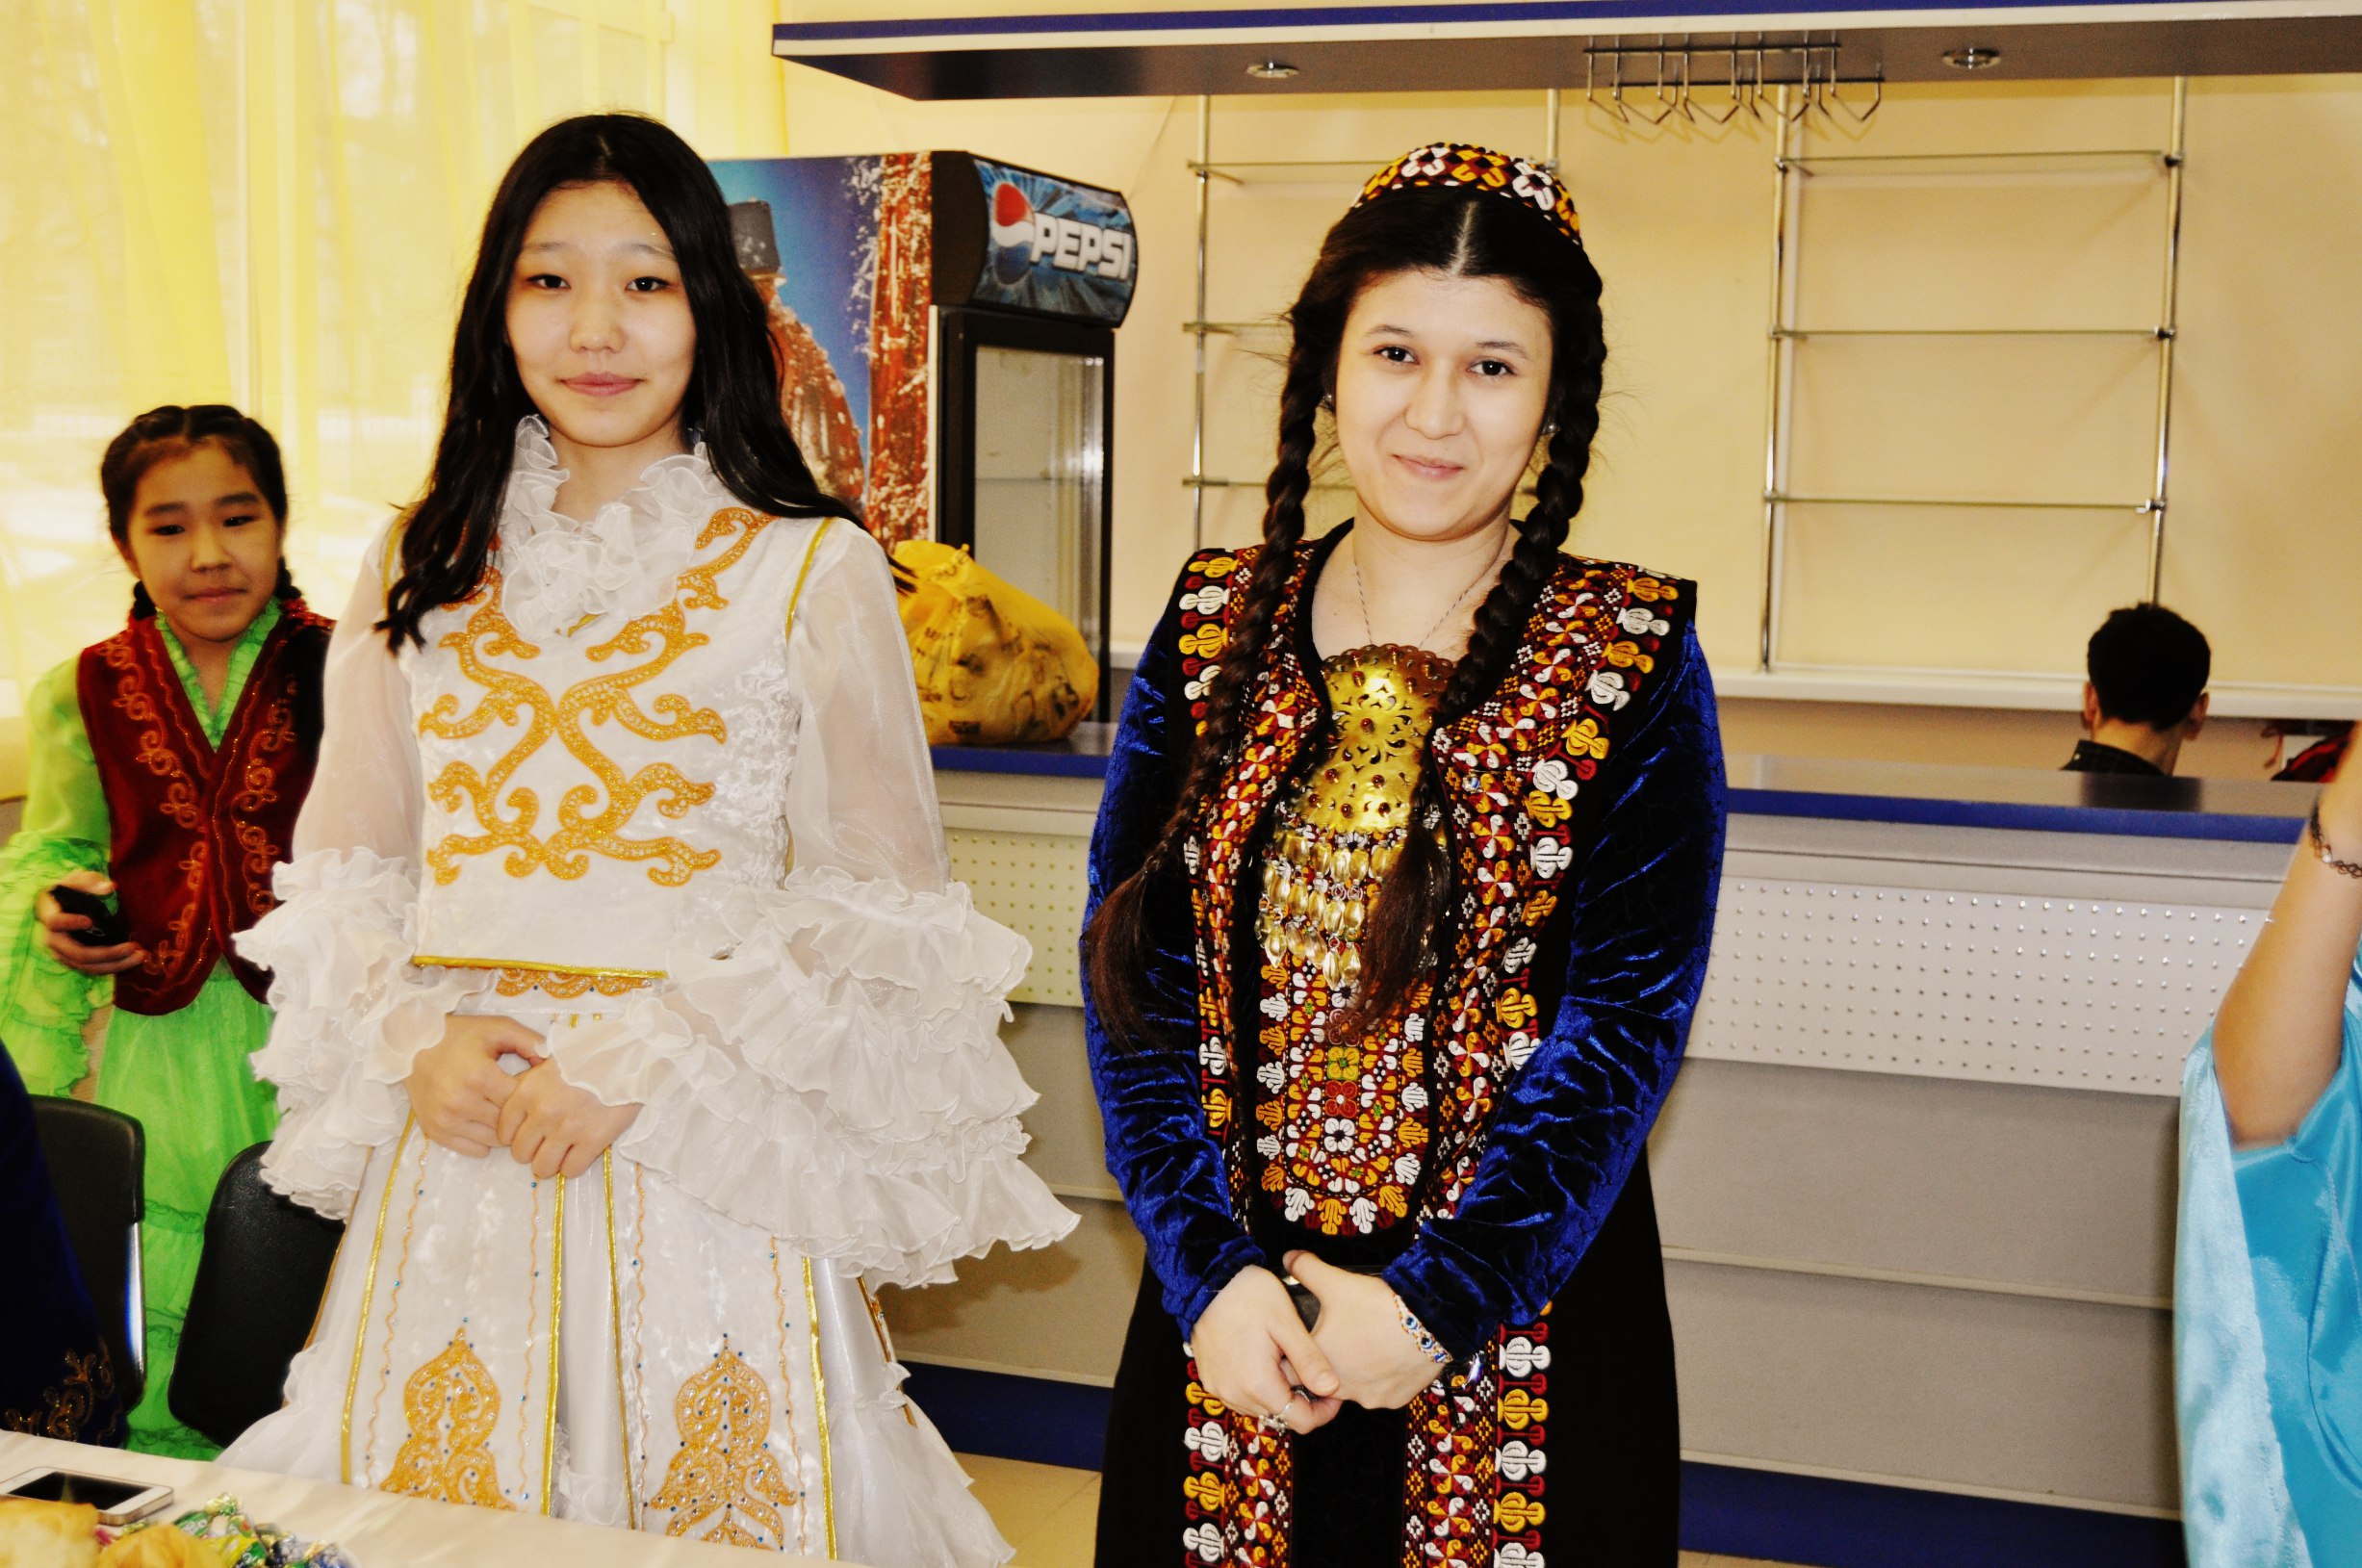 Узбек таджик киргиз туркмен. Казахи и туркмены. Казахи и киргизки. Киргизки и казашки отличие. Казахи и киргизы один народ.